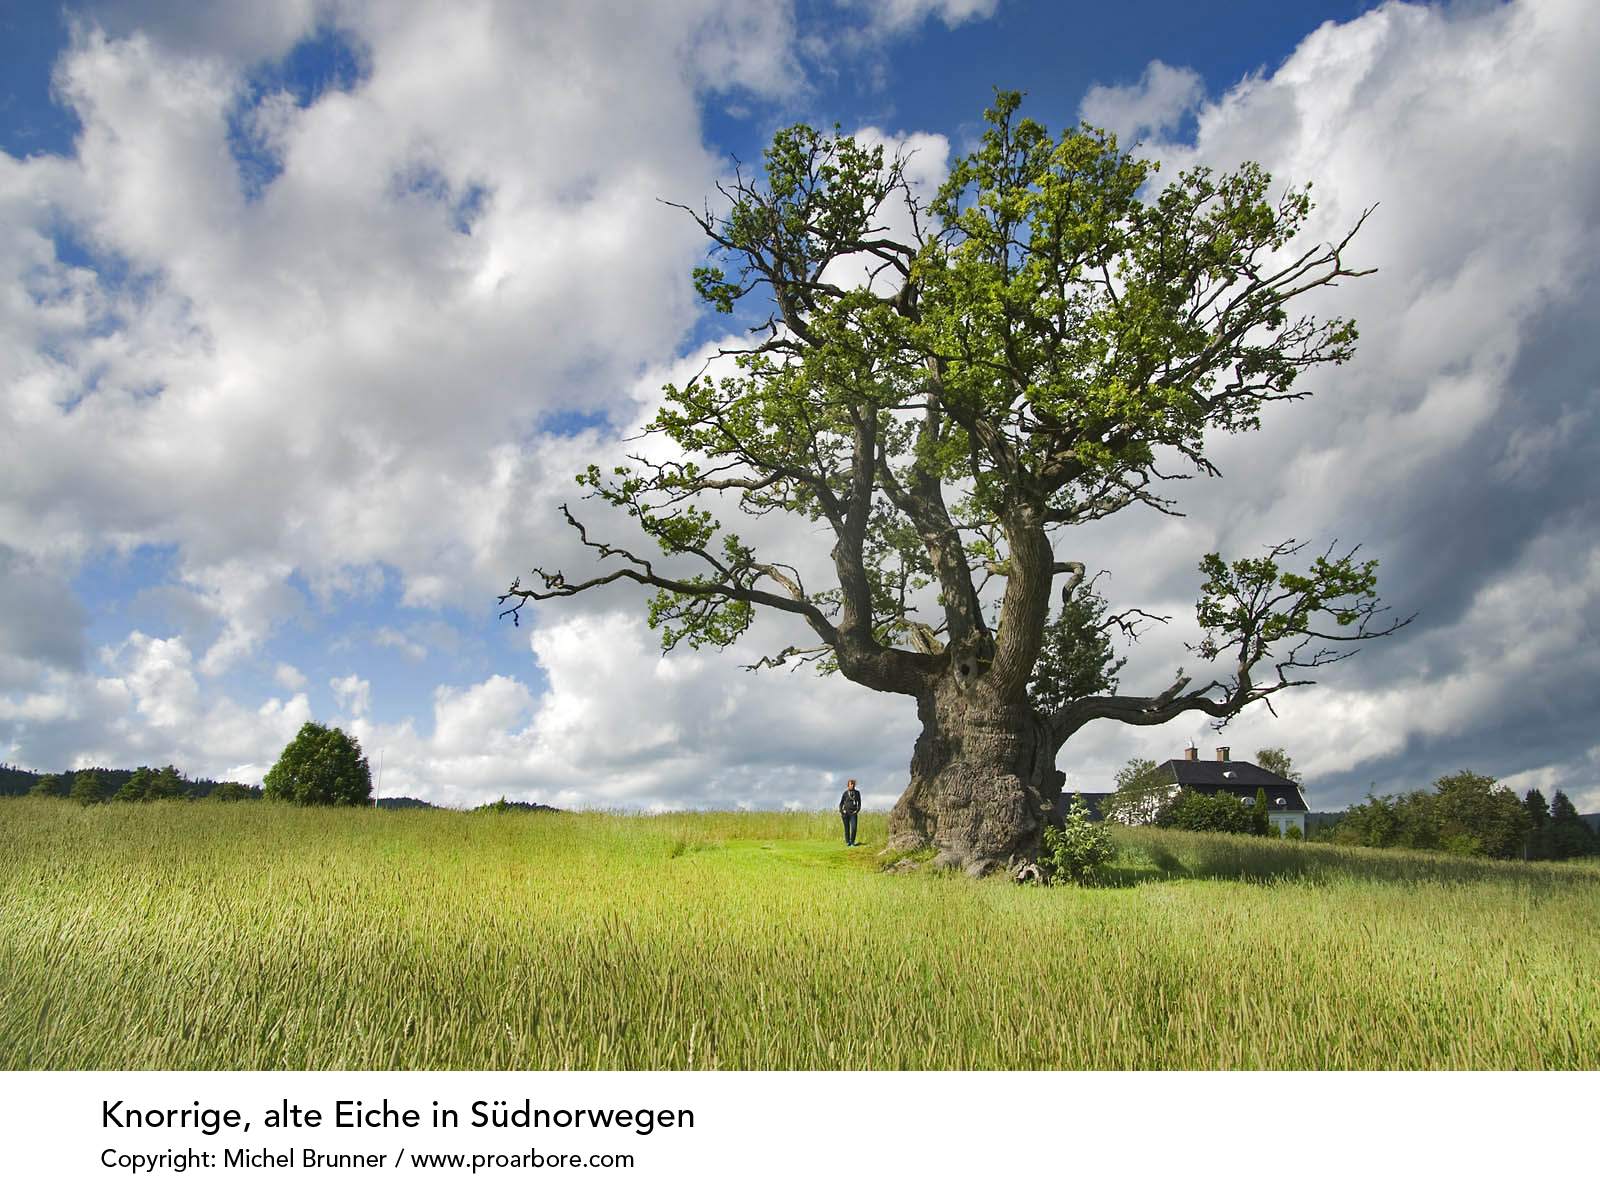 Oak Tree in Norway by Michel Brunner www.proarbore.com